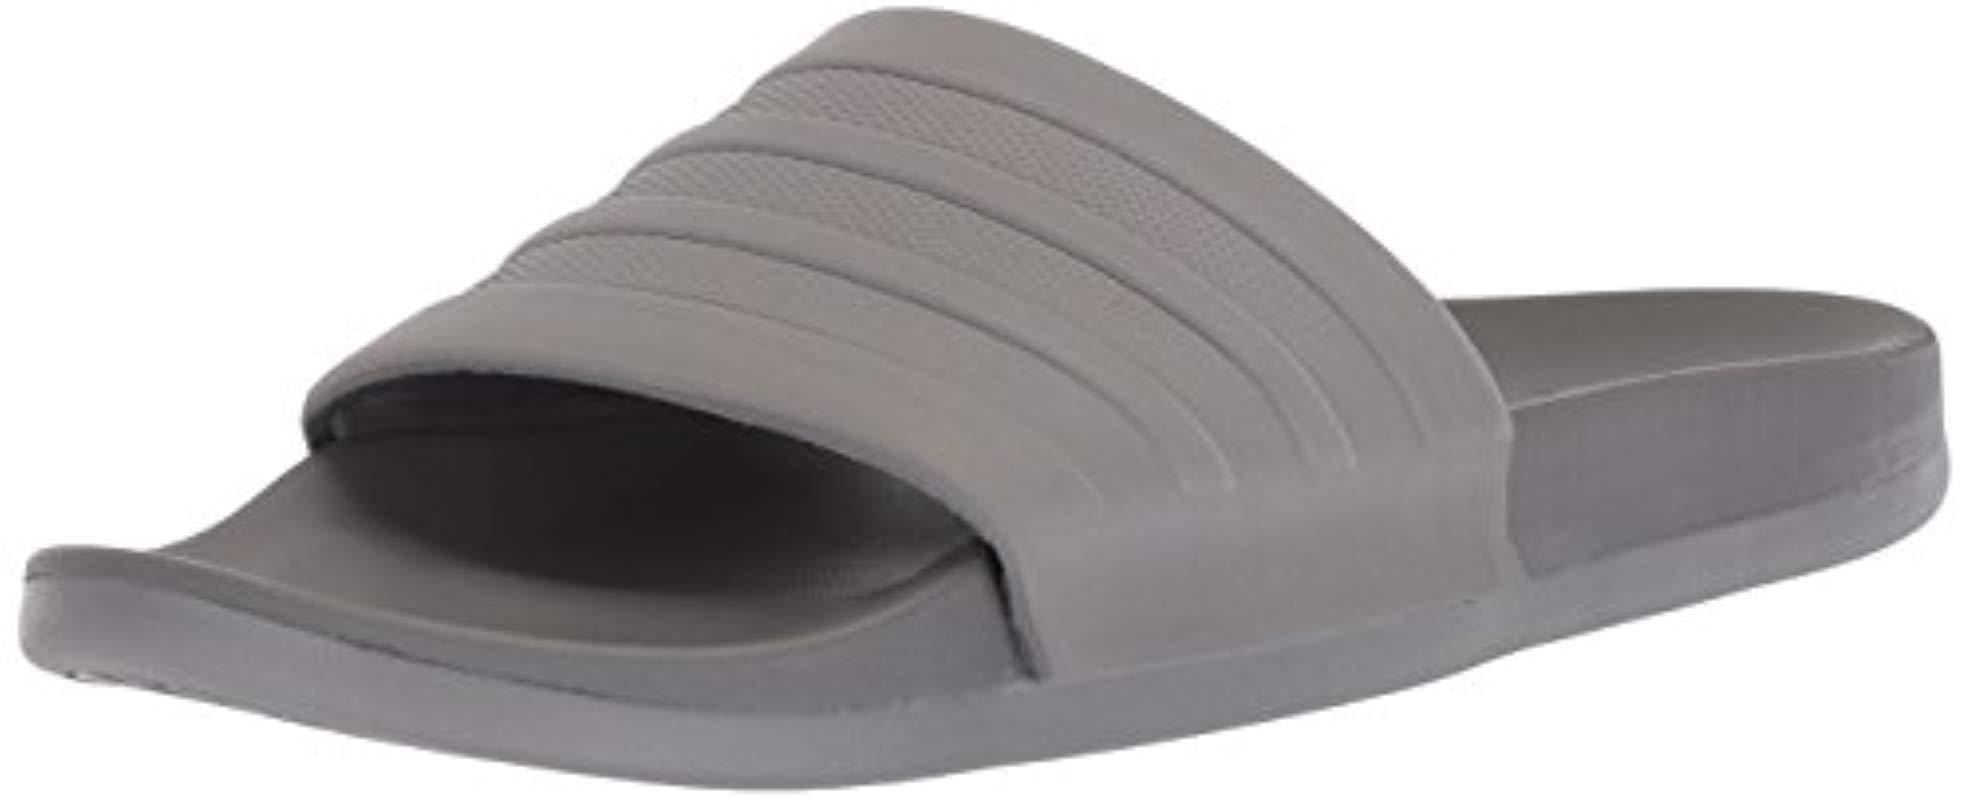 adilette comfort slides grey three